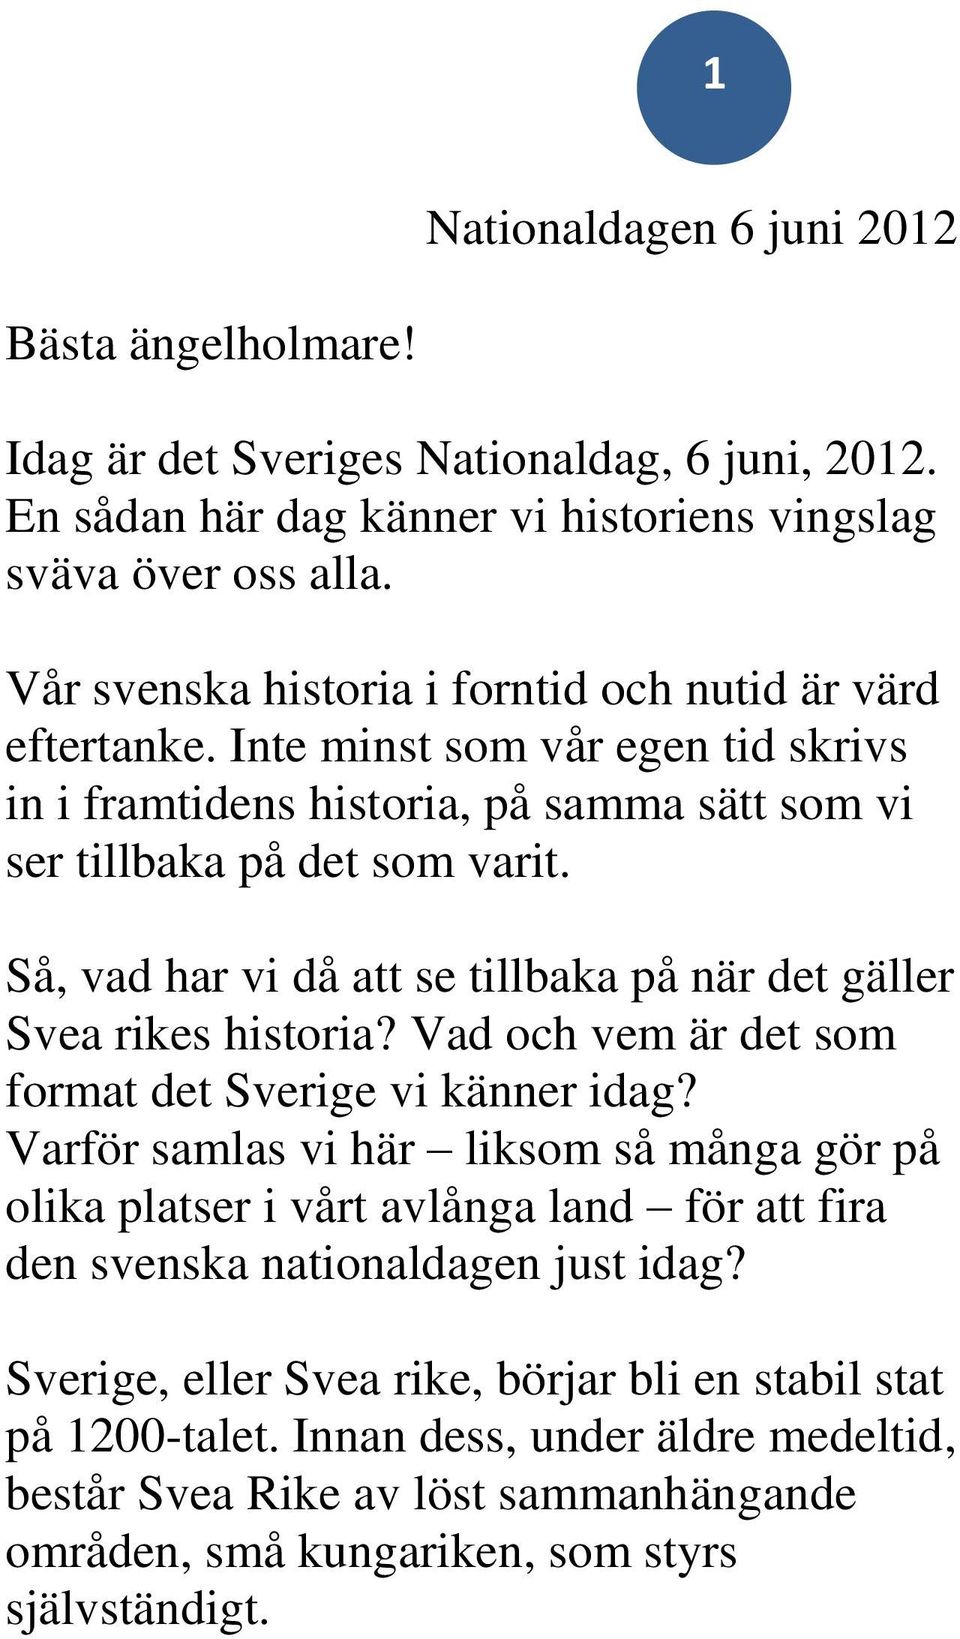 Så, vad har vi då att se tillbaka på när det gäller Svea rikes historia? Vad och vem är det som format det Sverige vi känner idag?